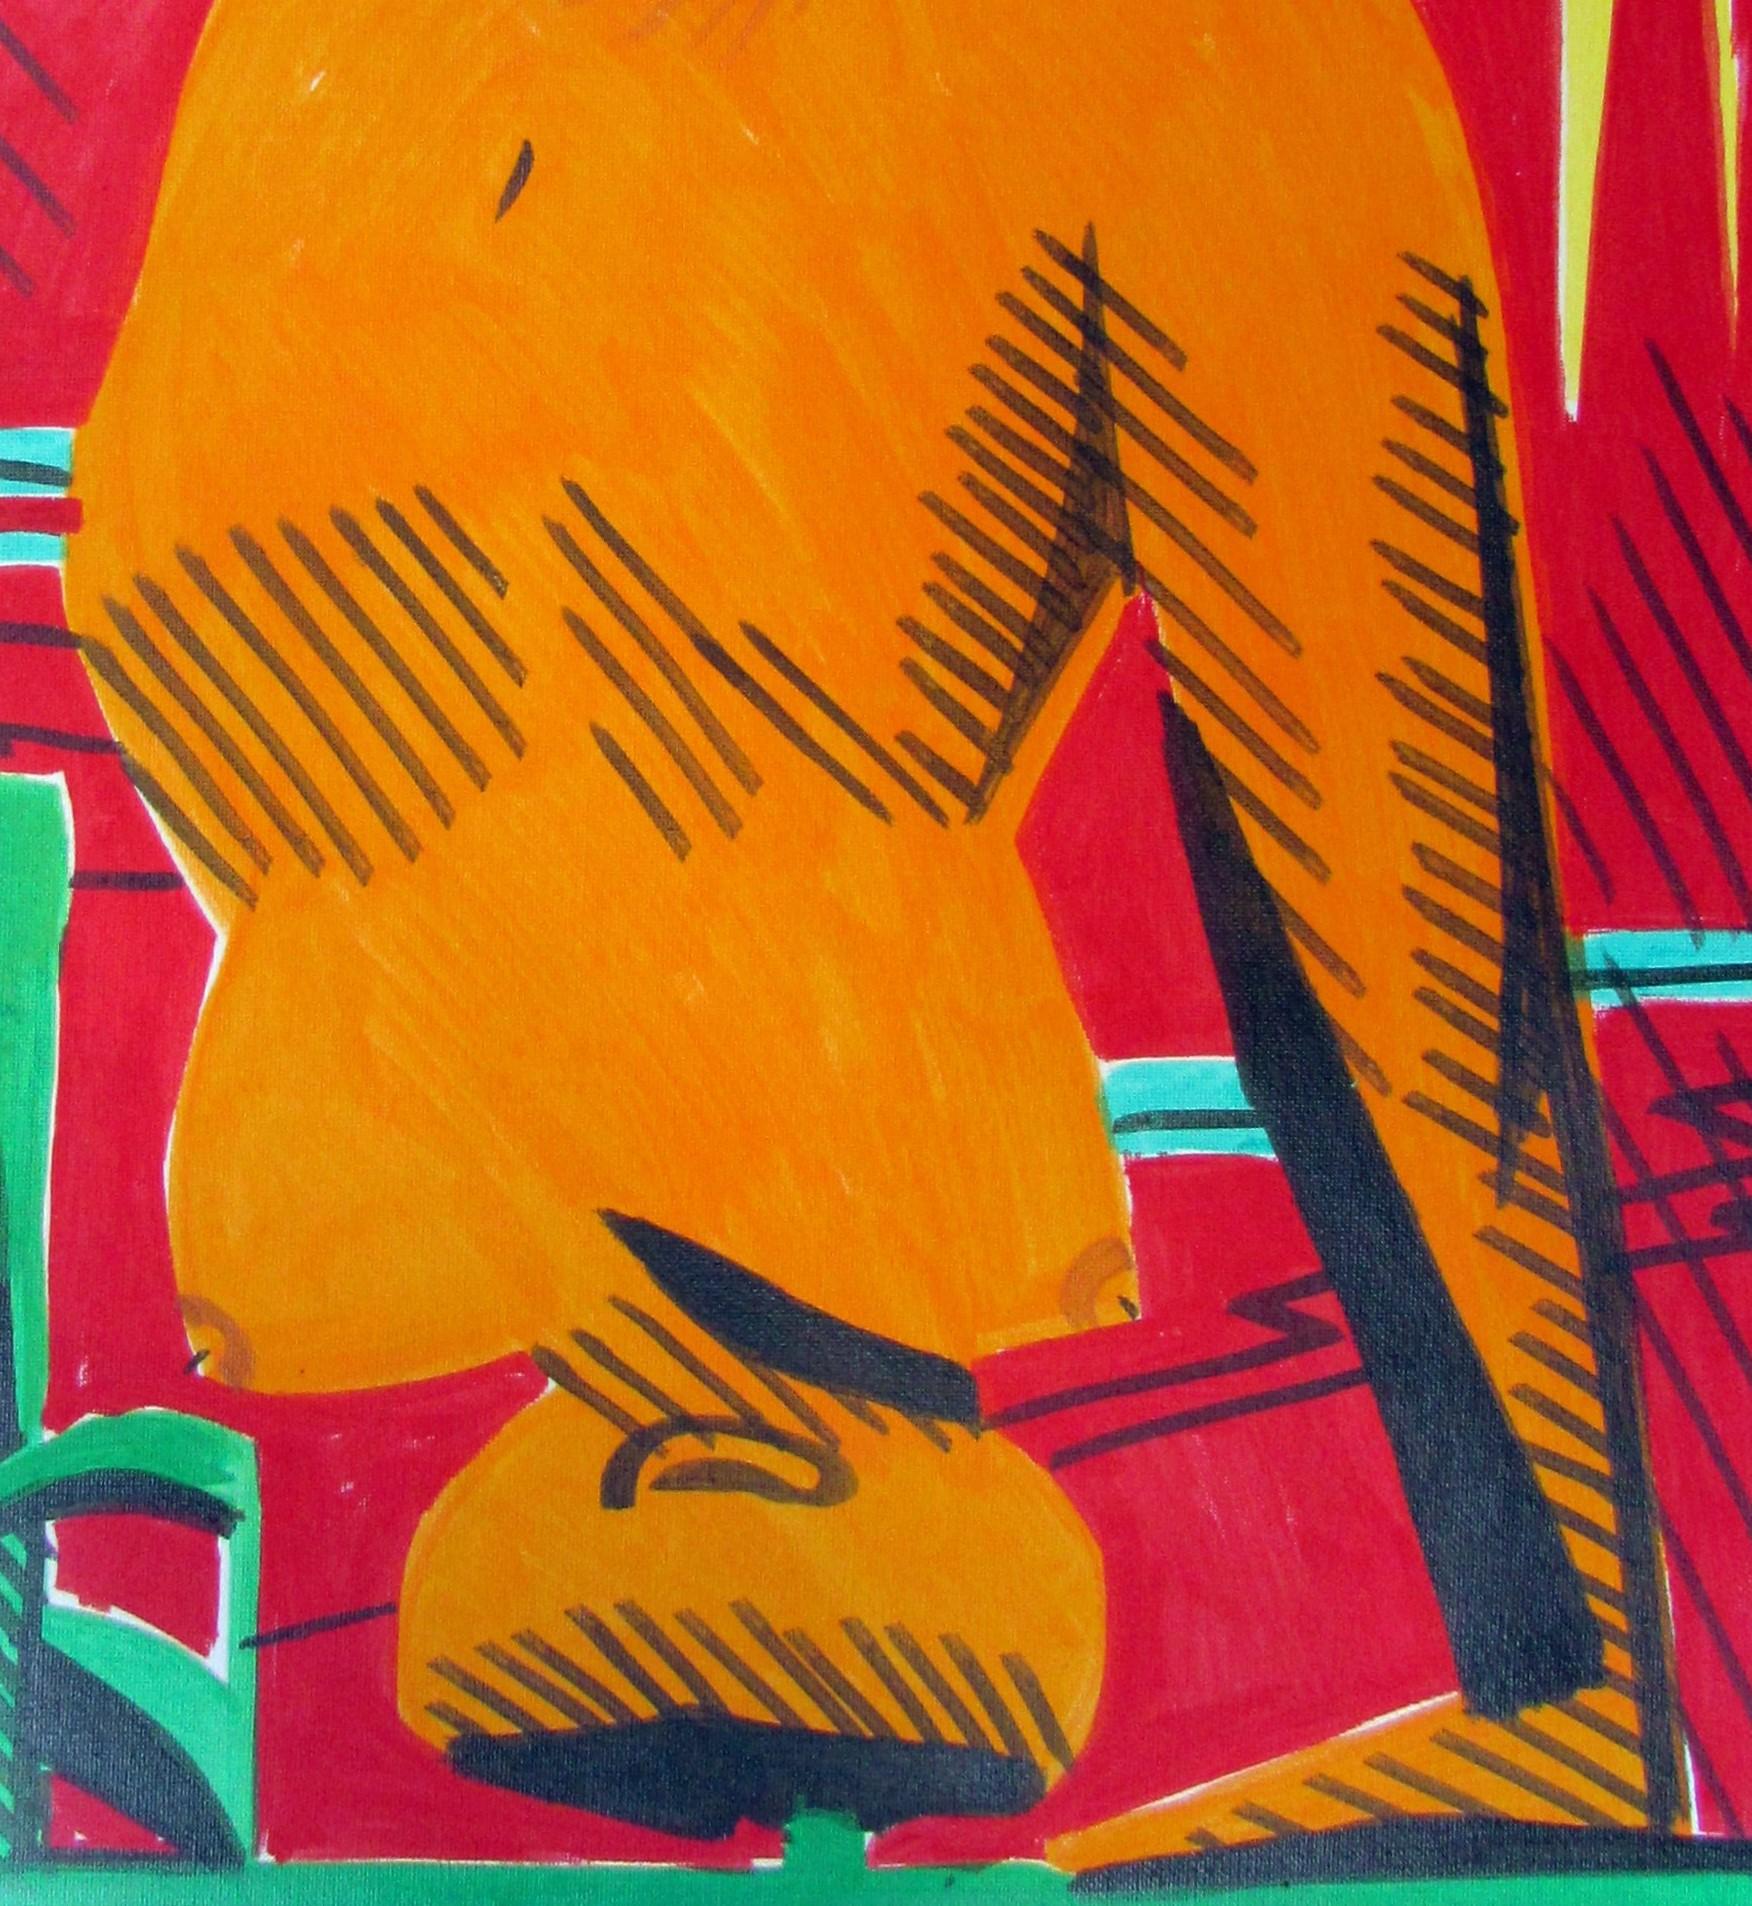 Seltsame Frauen V, 2015
Acryl auf Leinwand pad
23,62 H x 17,71 W Zoll.
60 H x 45 B cm

